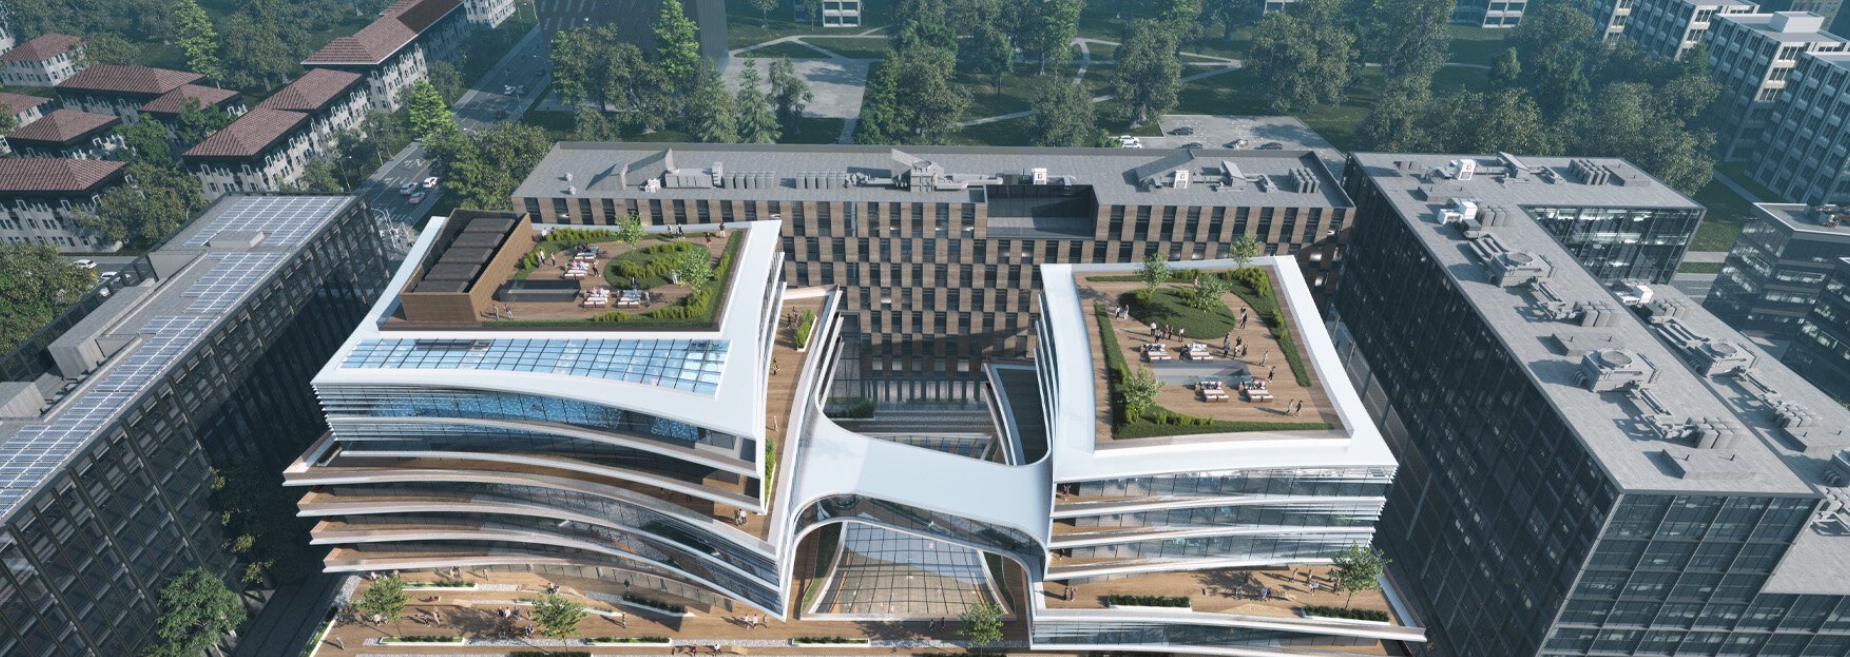 El futuro se materializa: Zaha Hadid Architects y el Business Stadium Central en Lituania 5